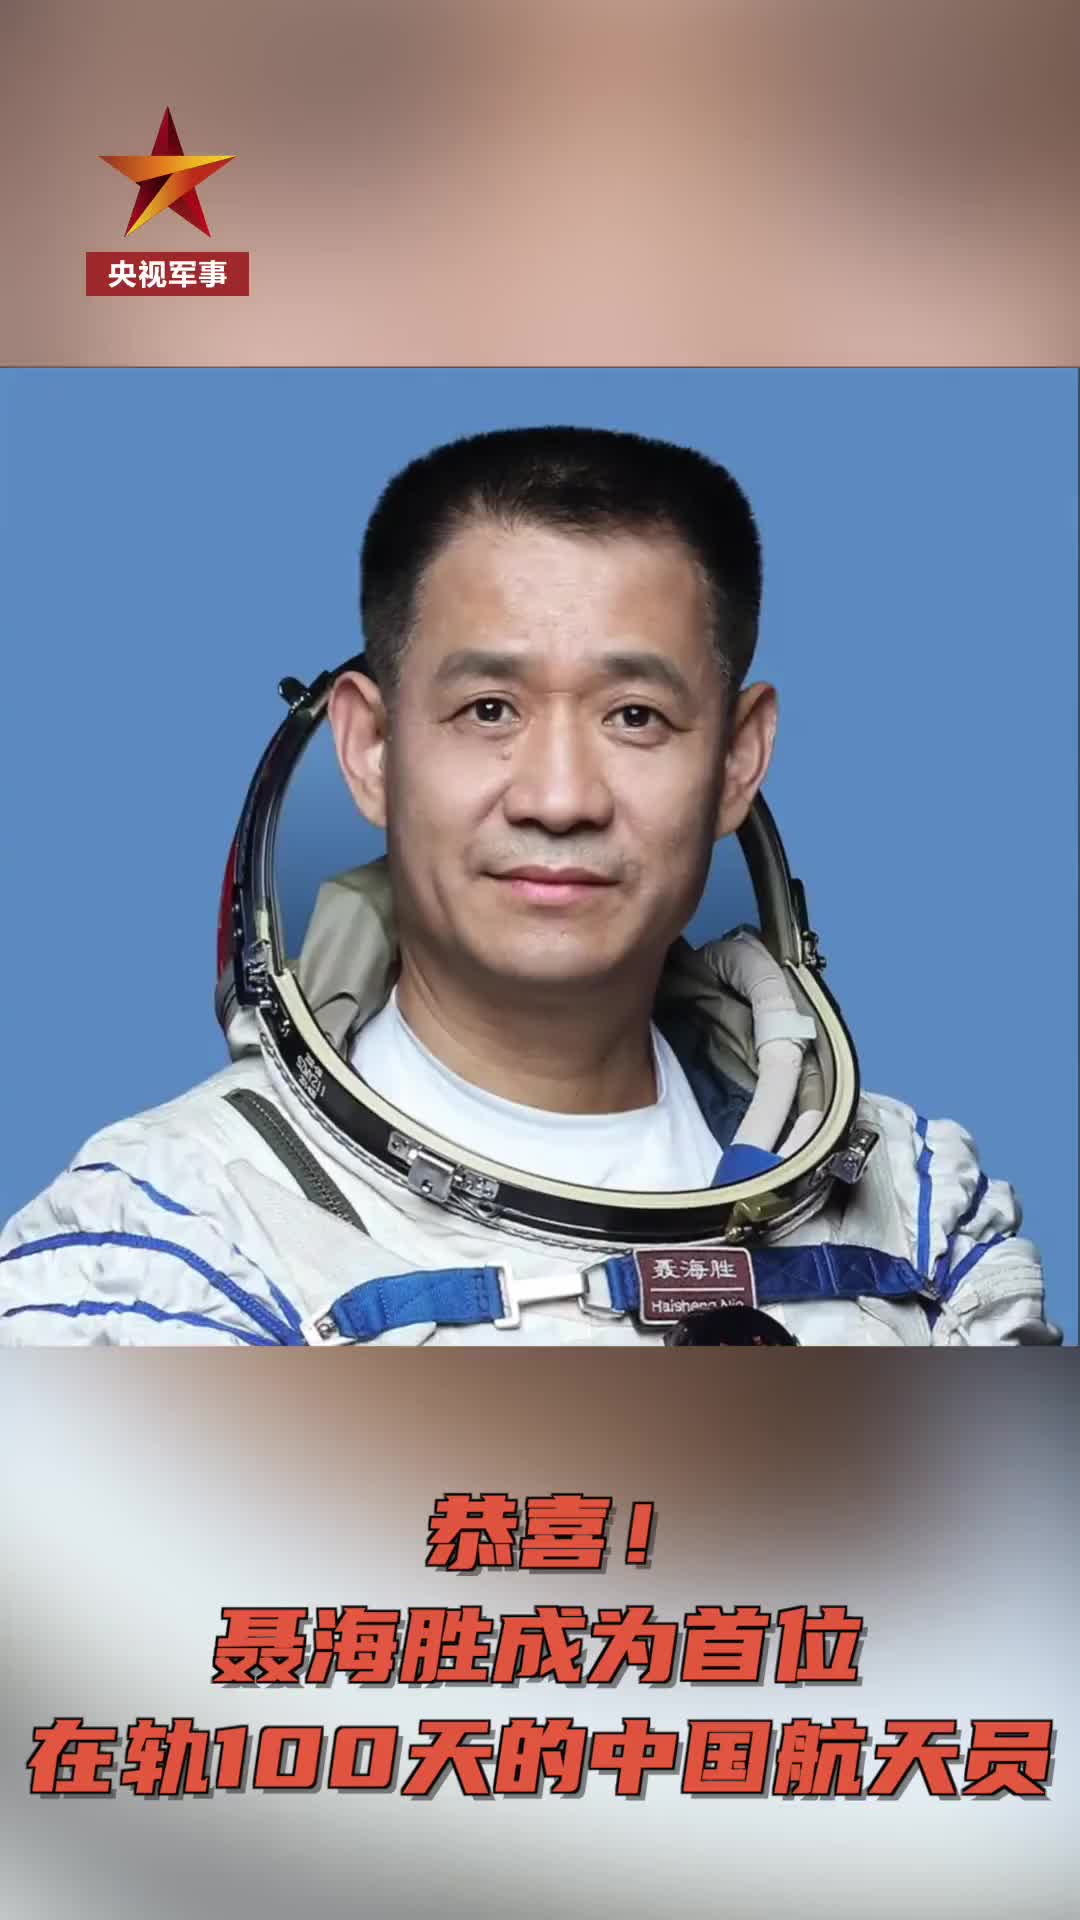 宇航员聂海胜的简历图片